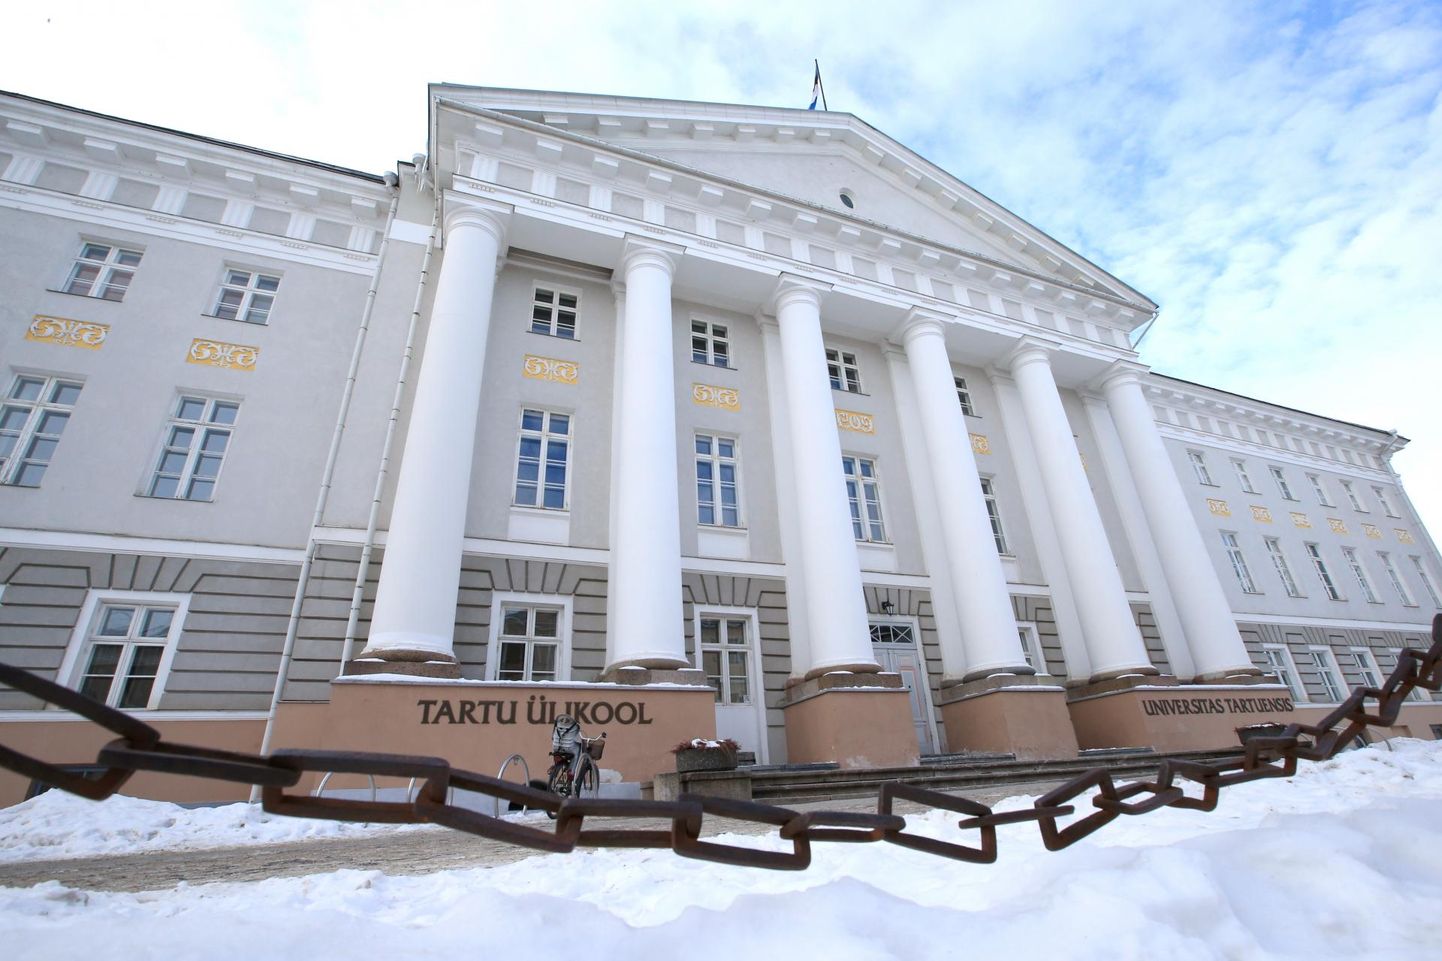 Tulevased tudengid võivad Tartu ülikooliga mitme kandi pealt tutvuda eeloleval reedel.